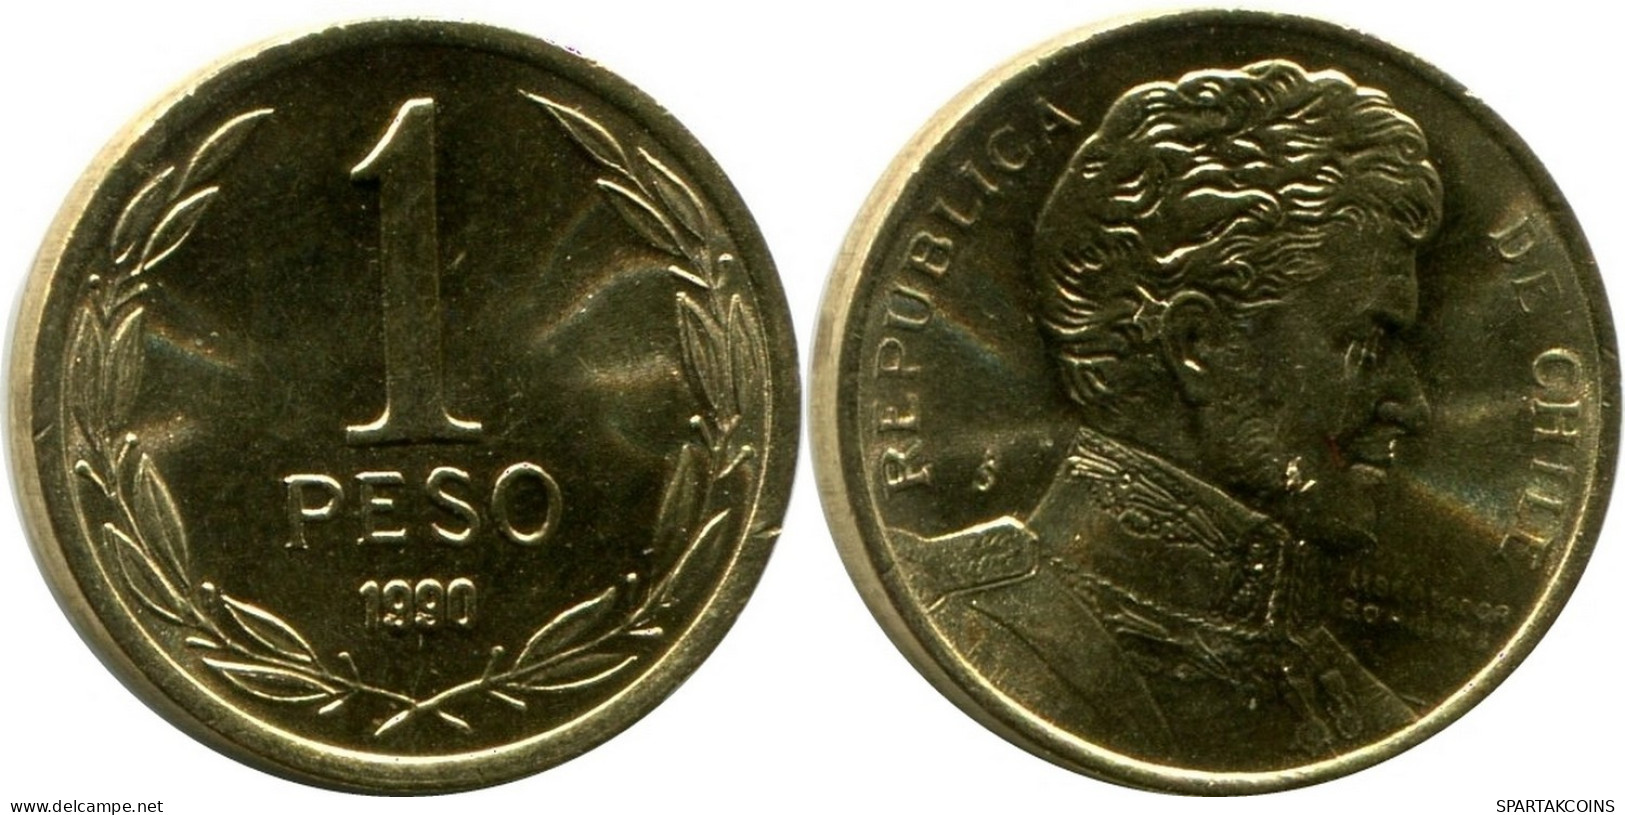 1 PESO 1990 CHILE UNC Coin #M10148.U.A - Chile